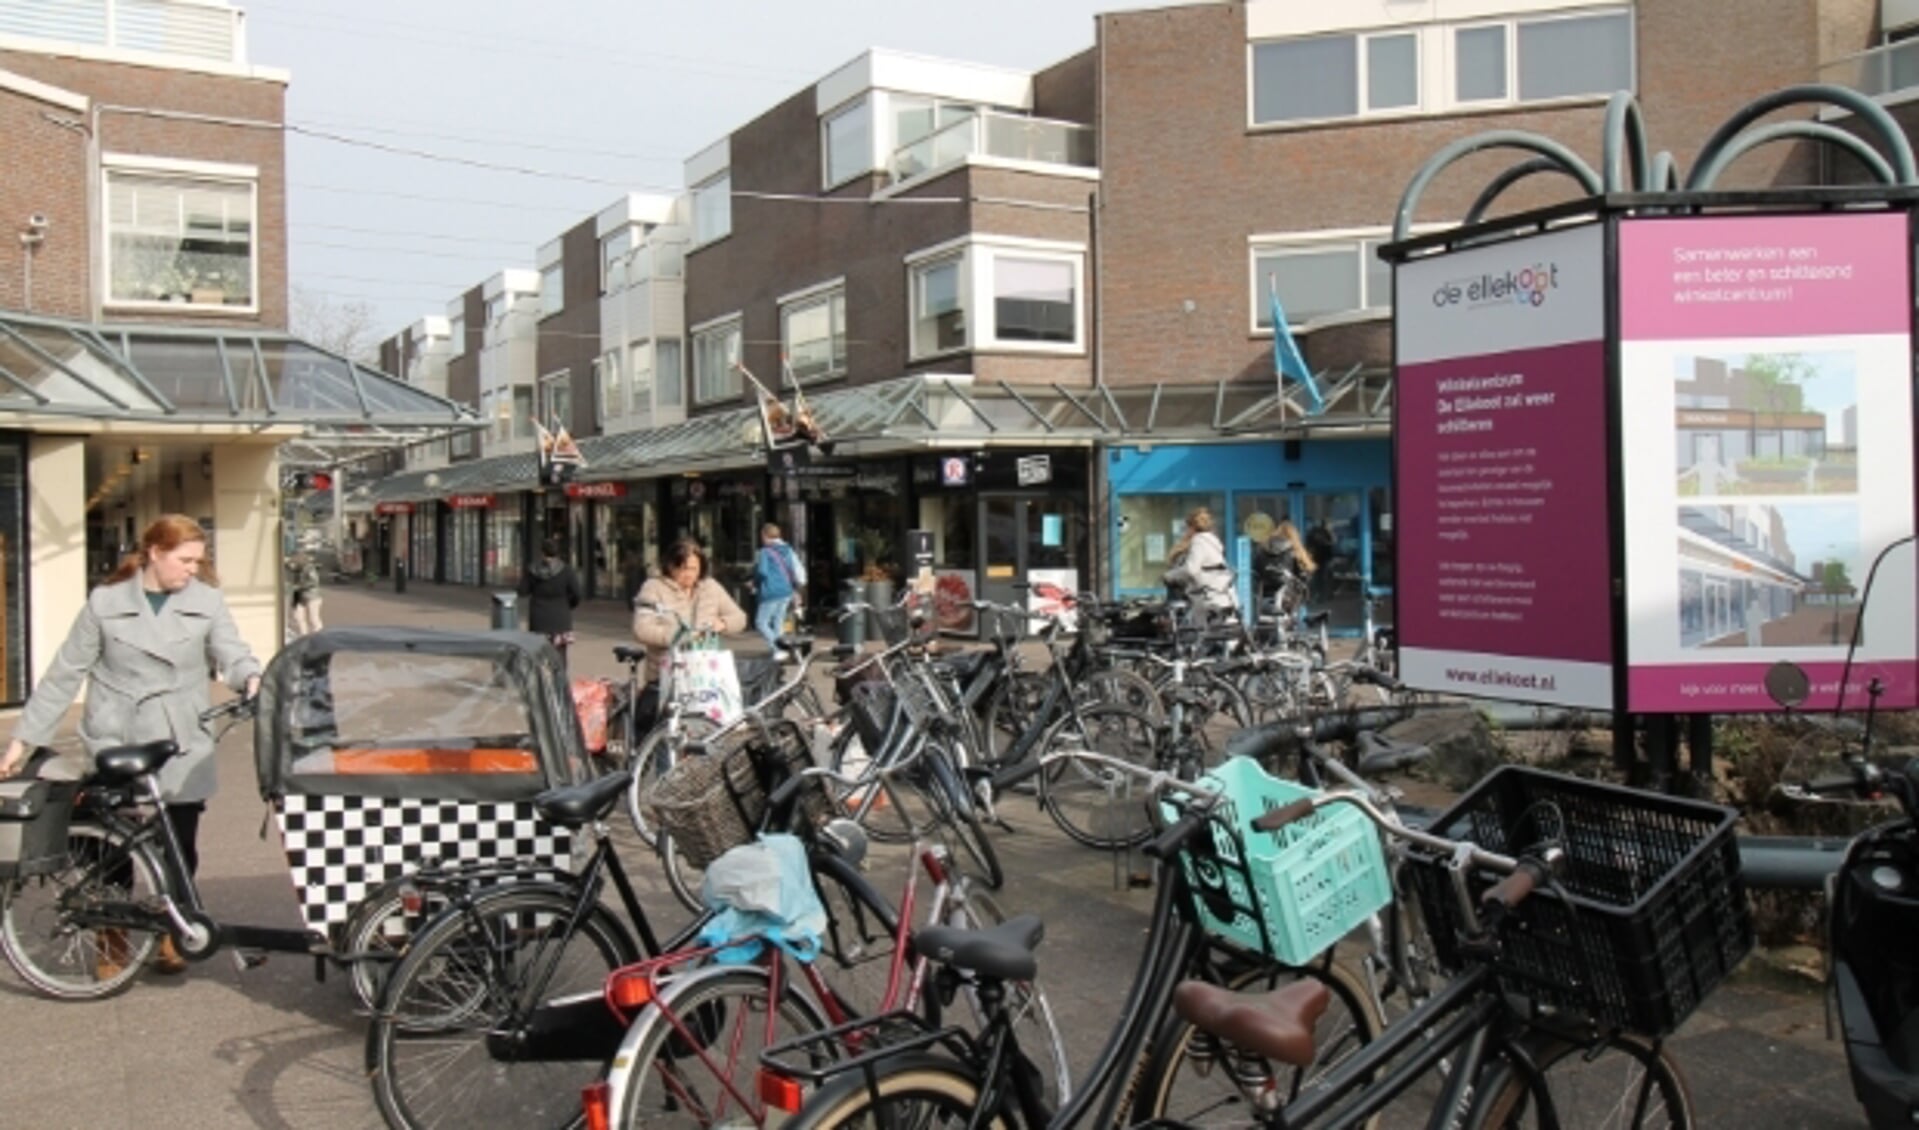 De fietsenstallingen krijgen straks een nettere en overzichtelijkere aanblik. (Foto: Marco Diepeveen)